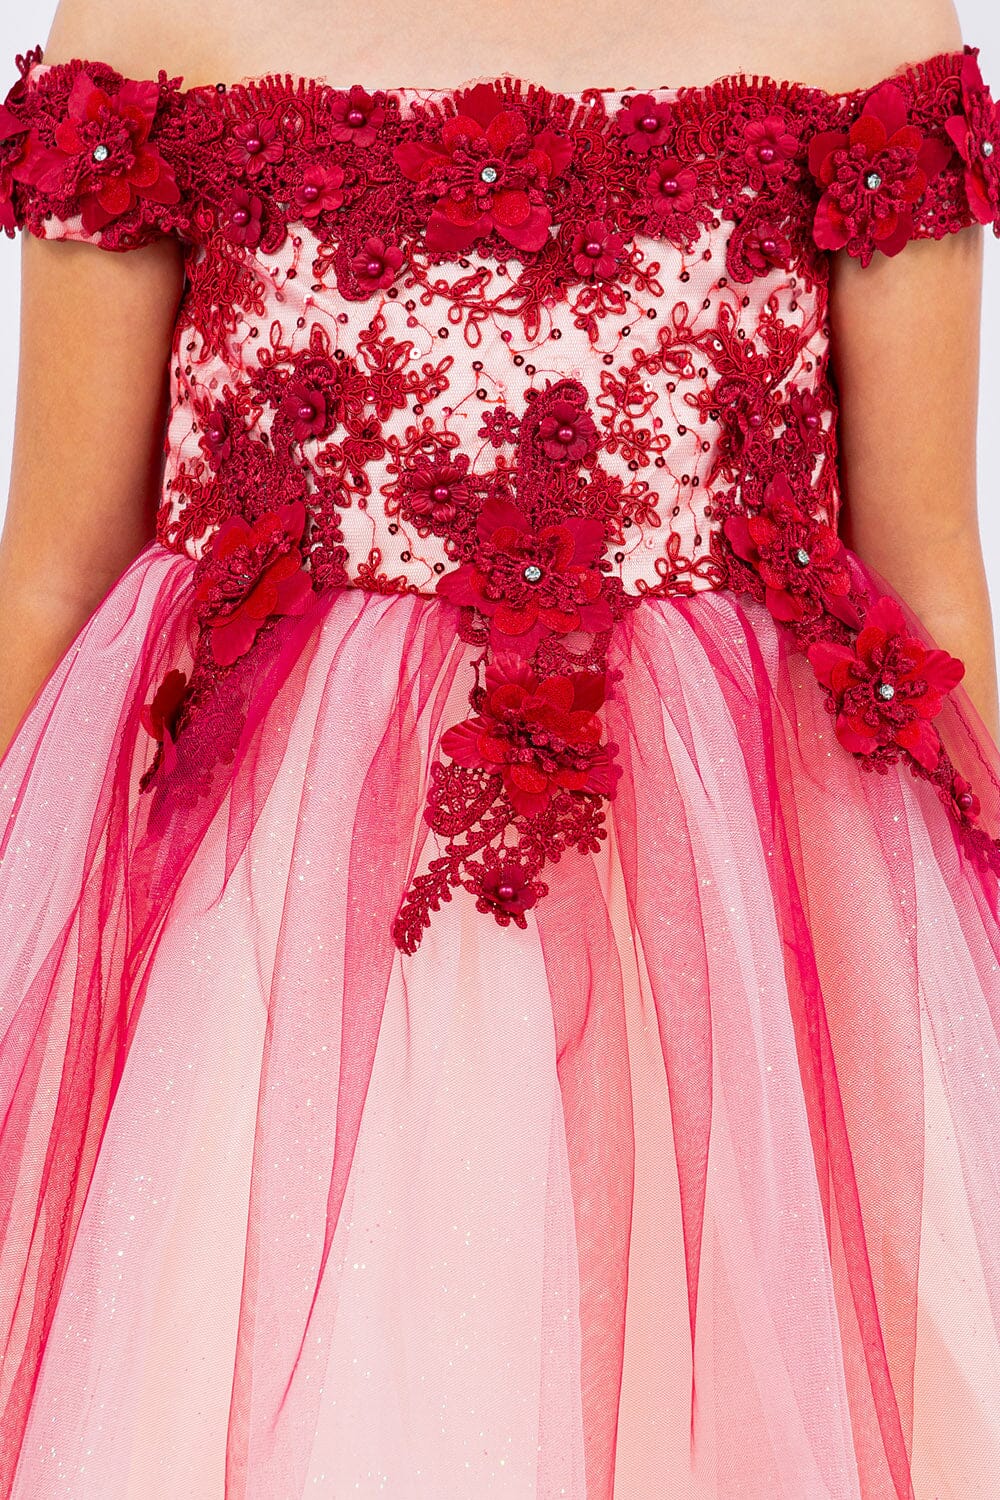 Girls 3D Floral Short Off Shoulder Dress by Cinderella Couture 9130